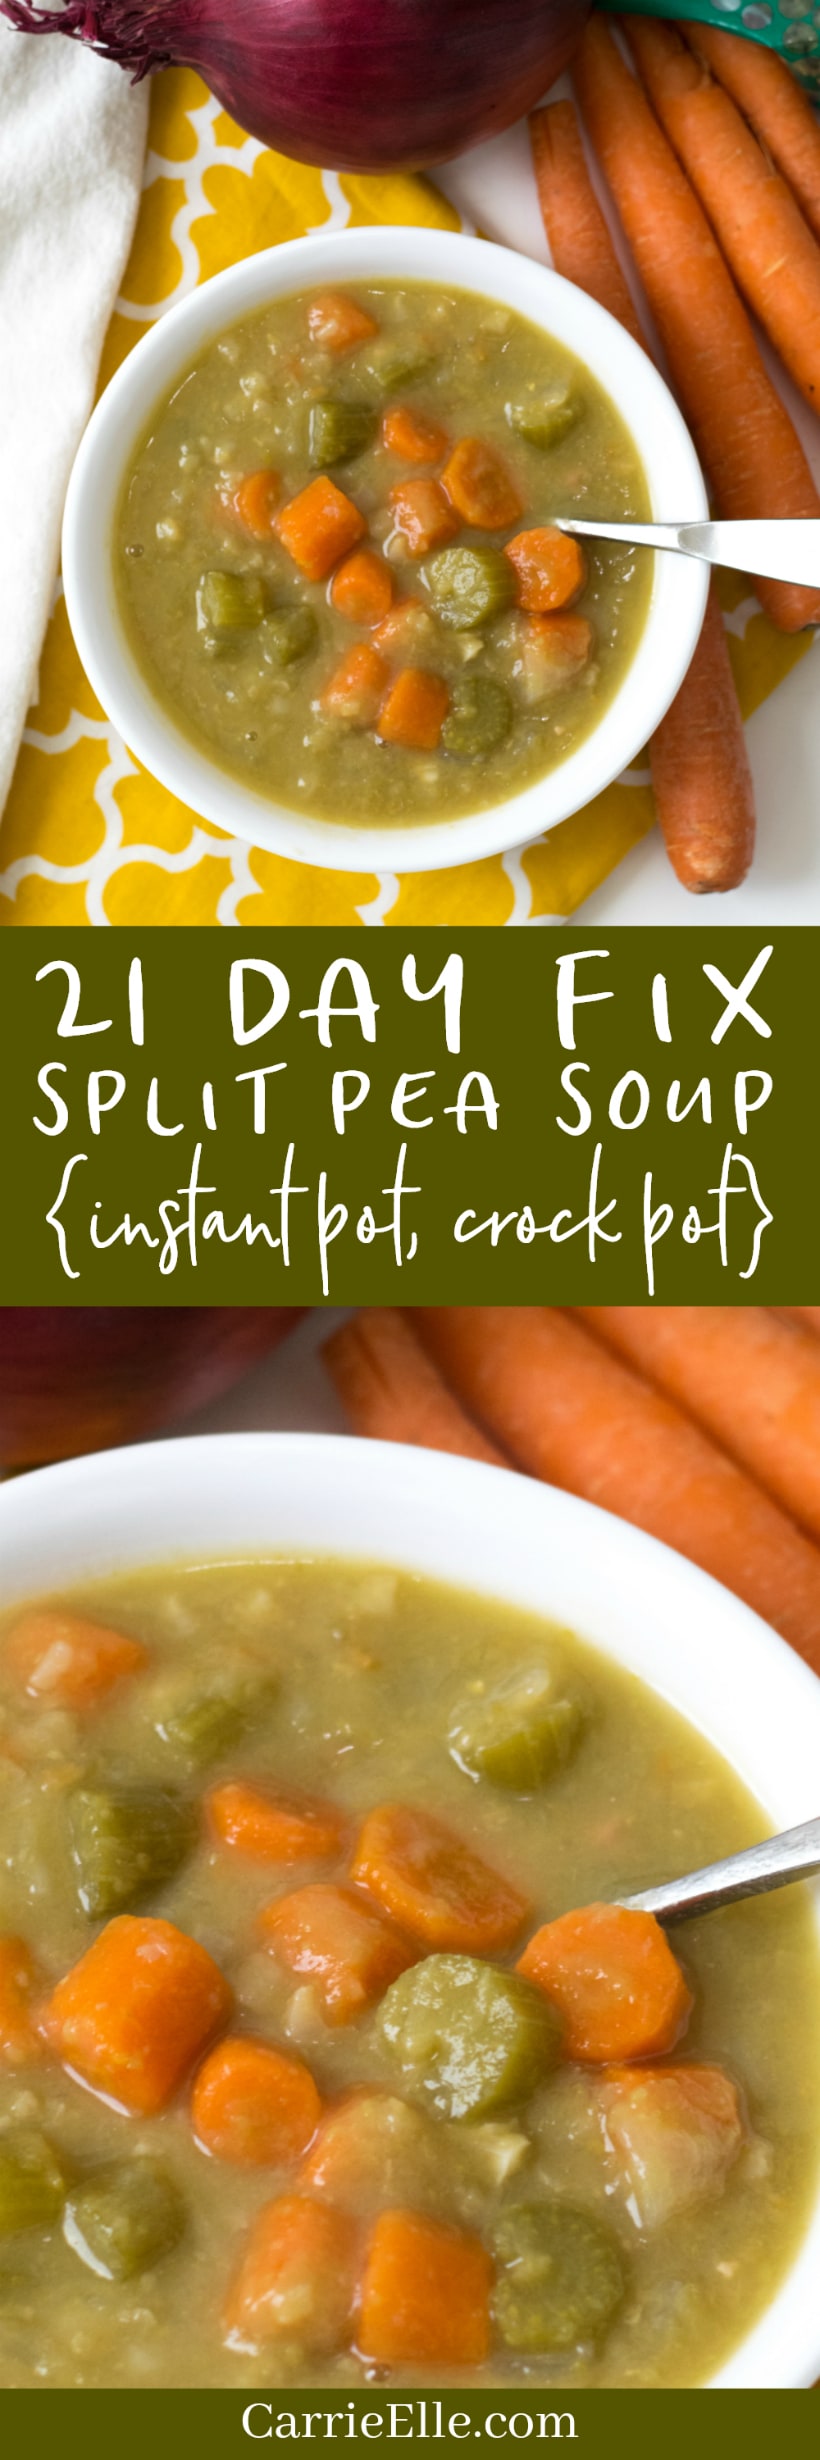 21 Day Fix Instant Pot Split Pea Soup